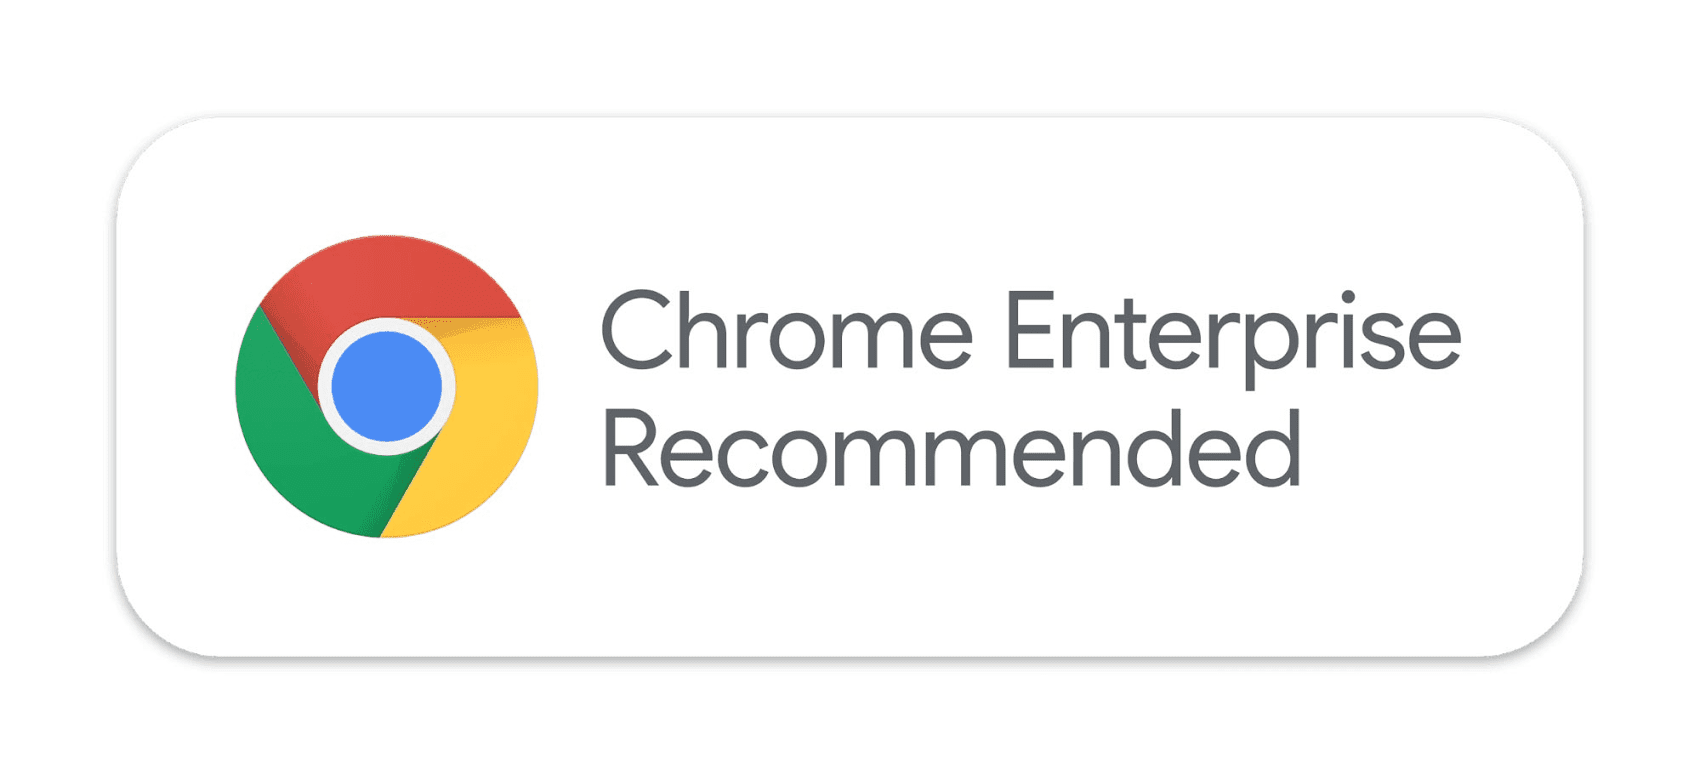 The logo for the Google Chrome Enterprise Recommended program